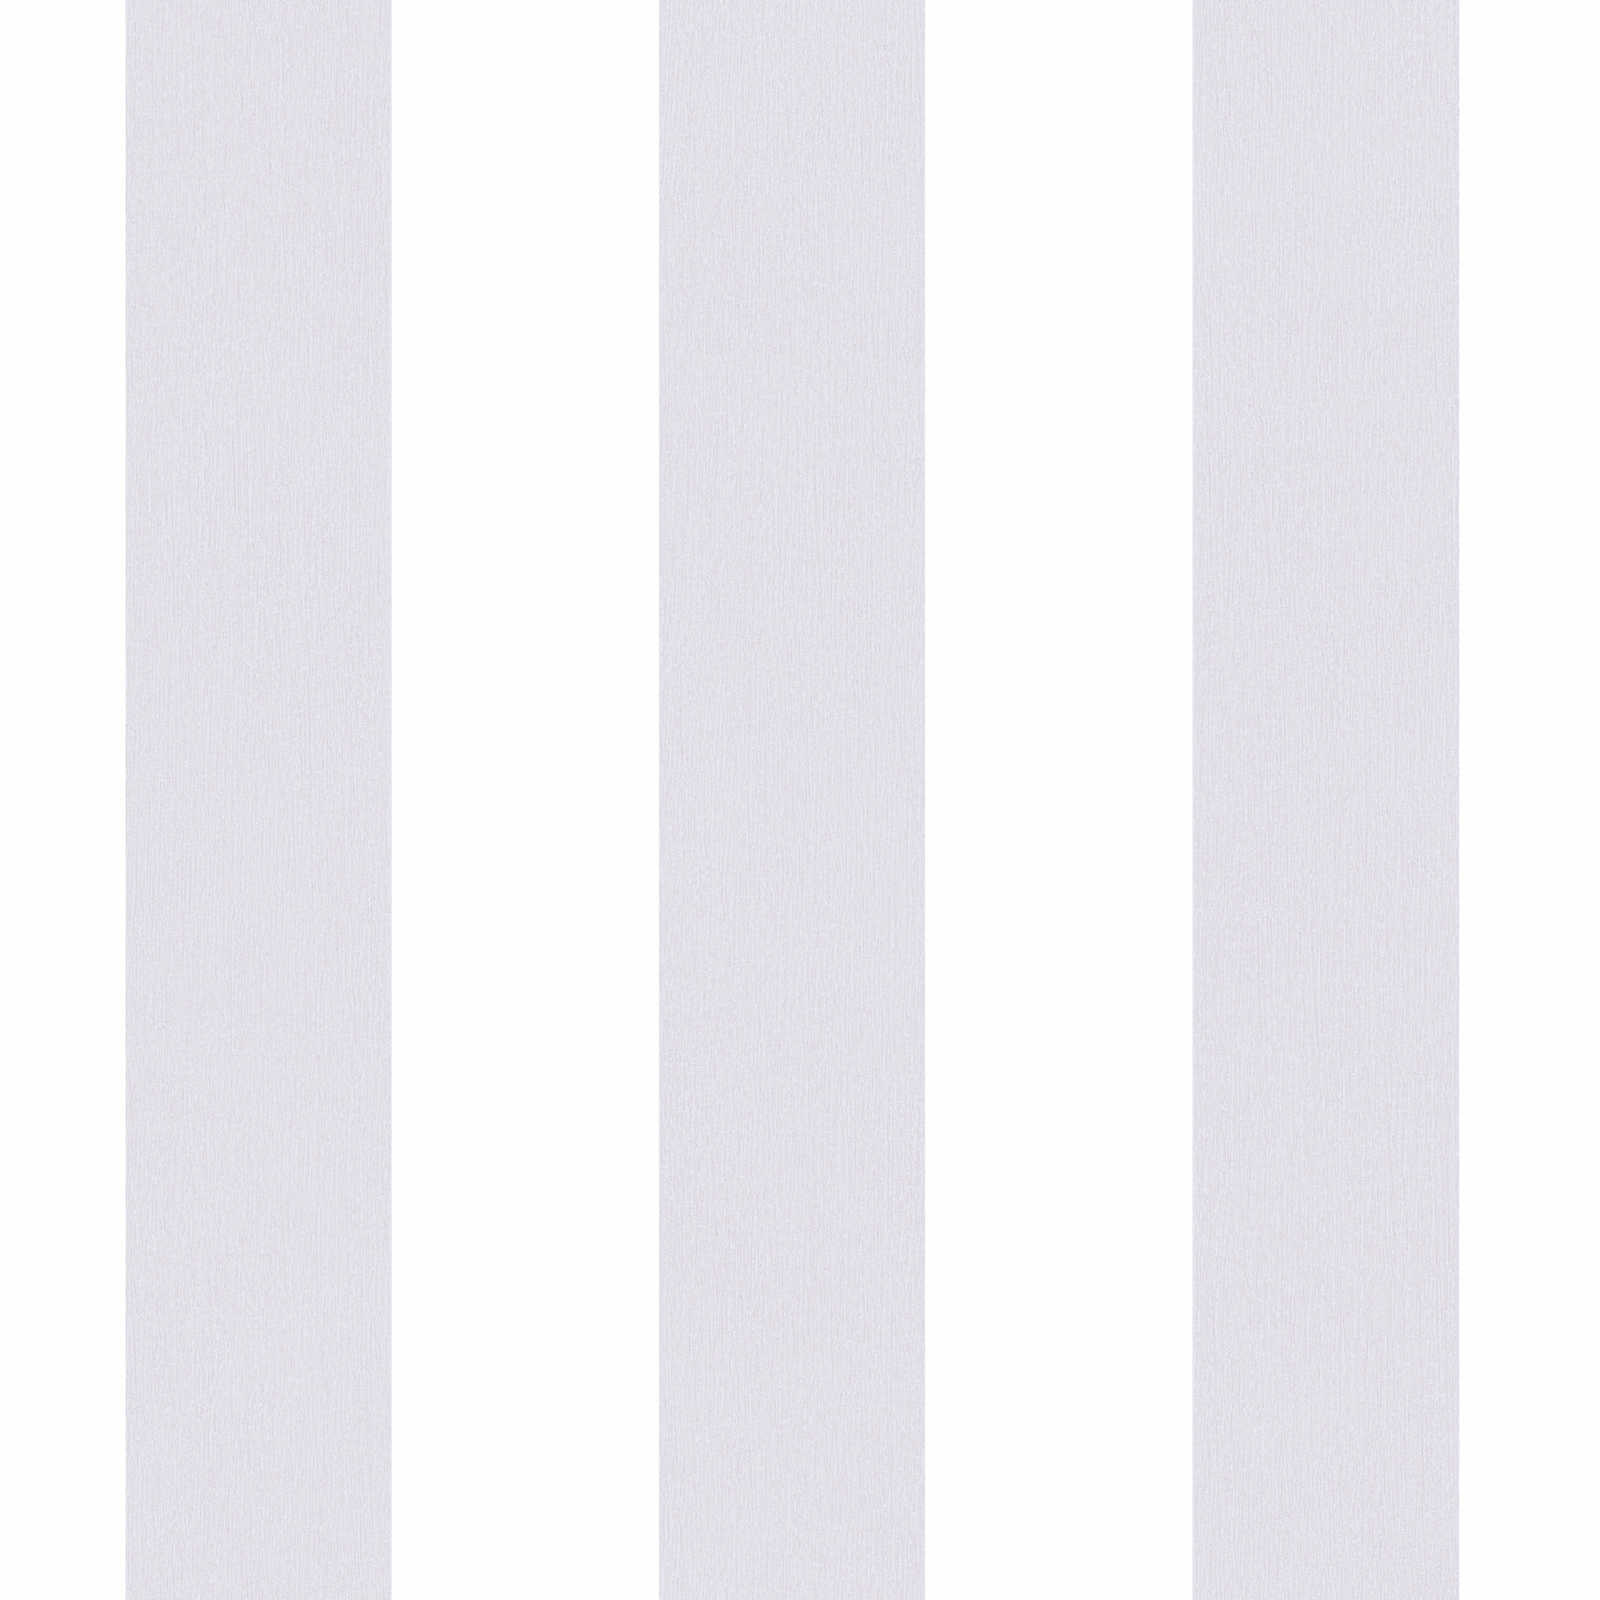 Kinderzimmer Tapete vertikale Streifen – Grau, Weiß
